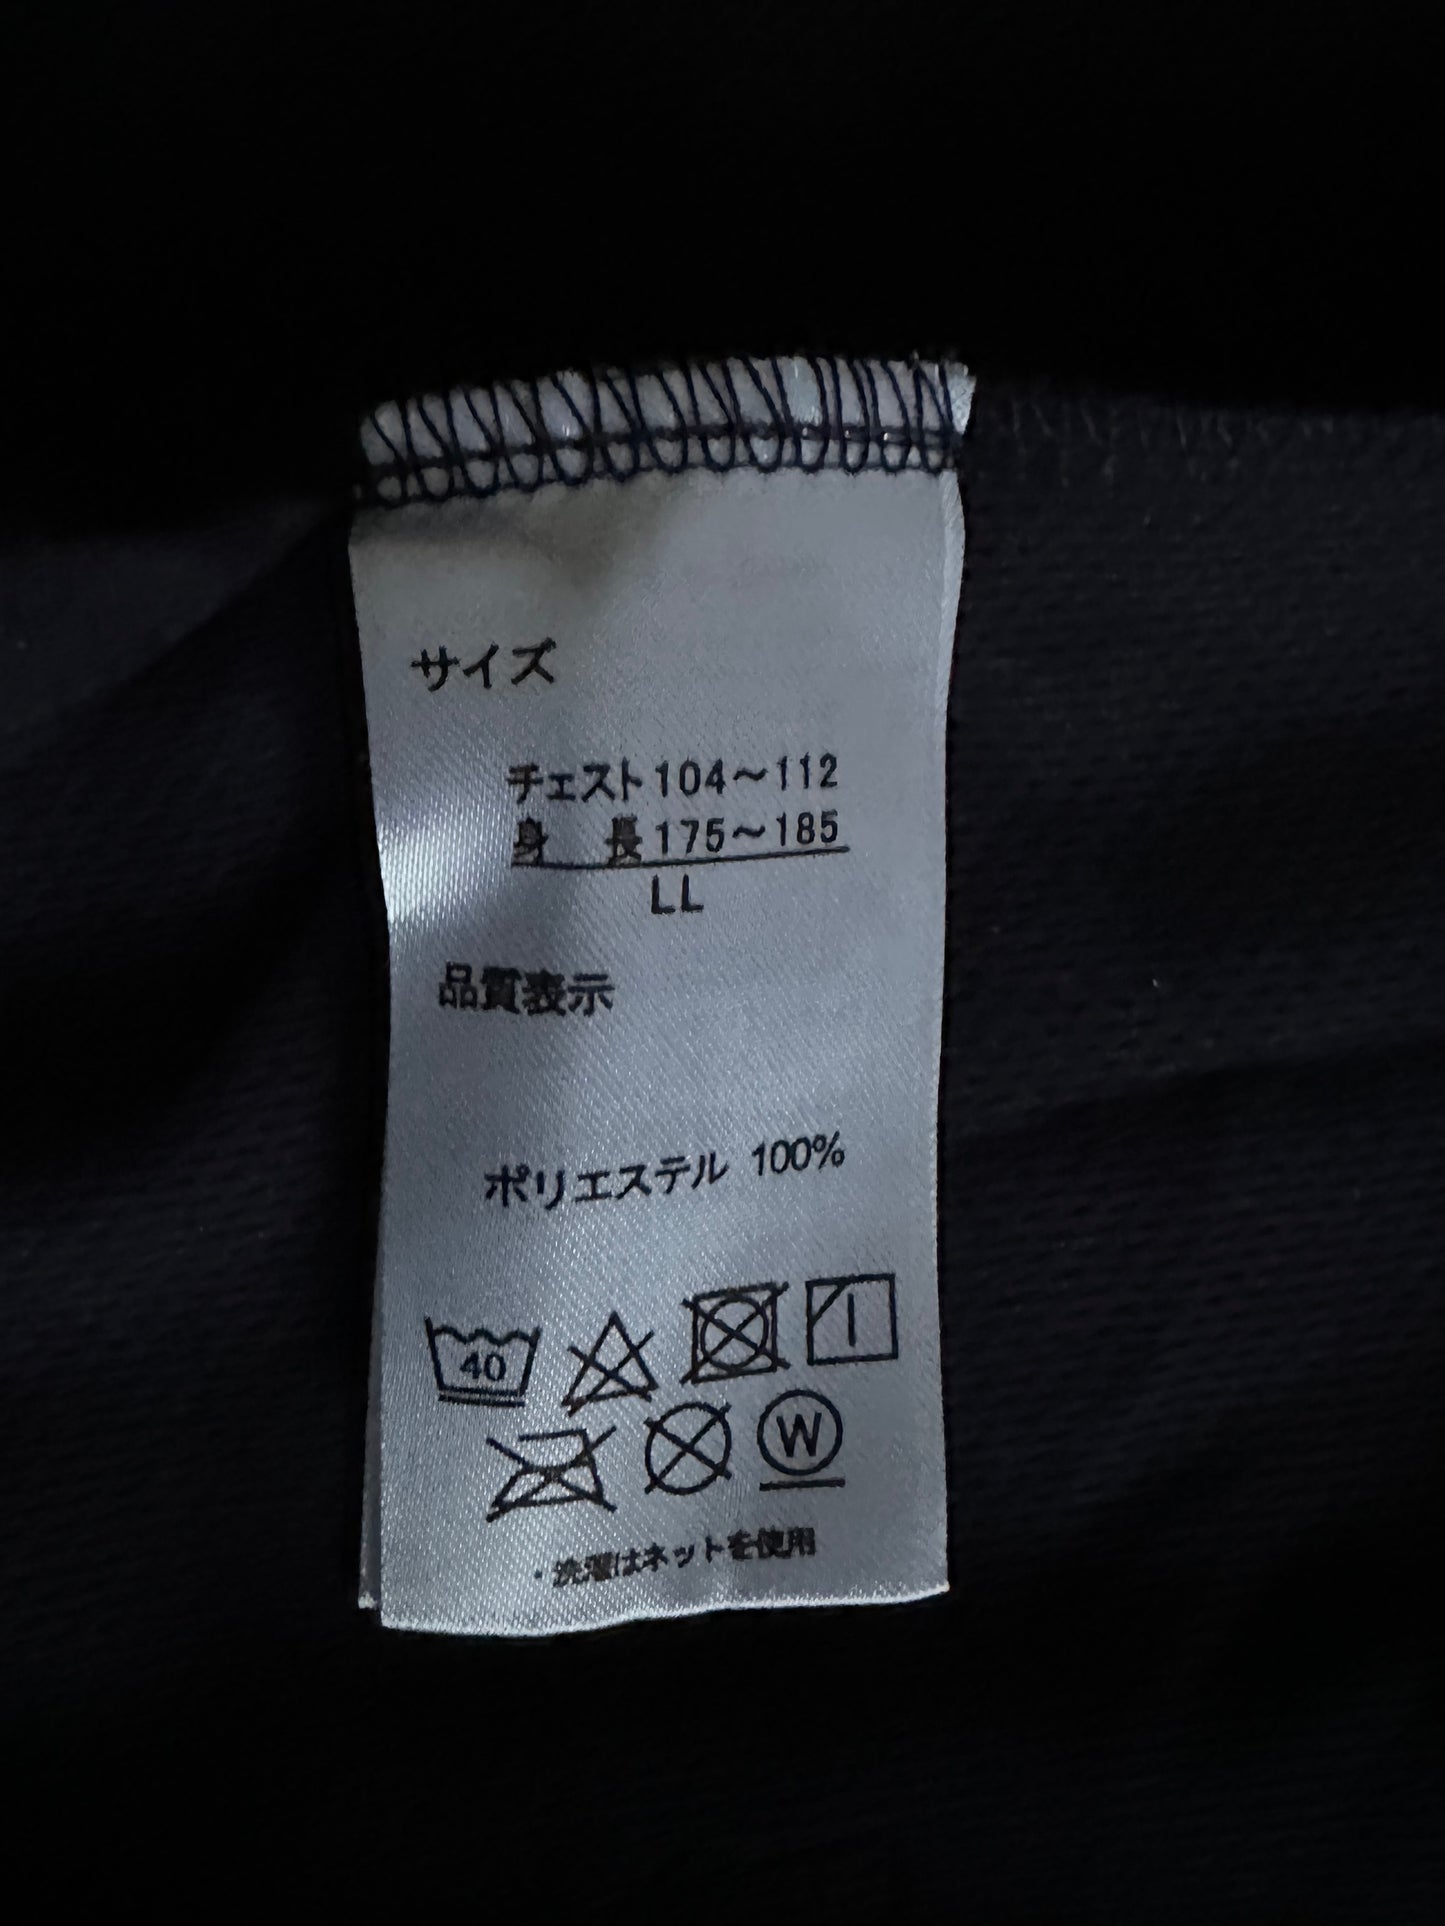 【Dark navy,Poke-mon】JINBEI/Size:2L＜New・polyester＞For Men,For Women,For kids,Japanese kimono,Japan unisexese Clothing,unisex,Japanese Gifts,relax wear